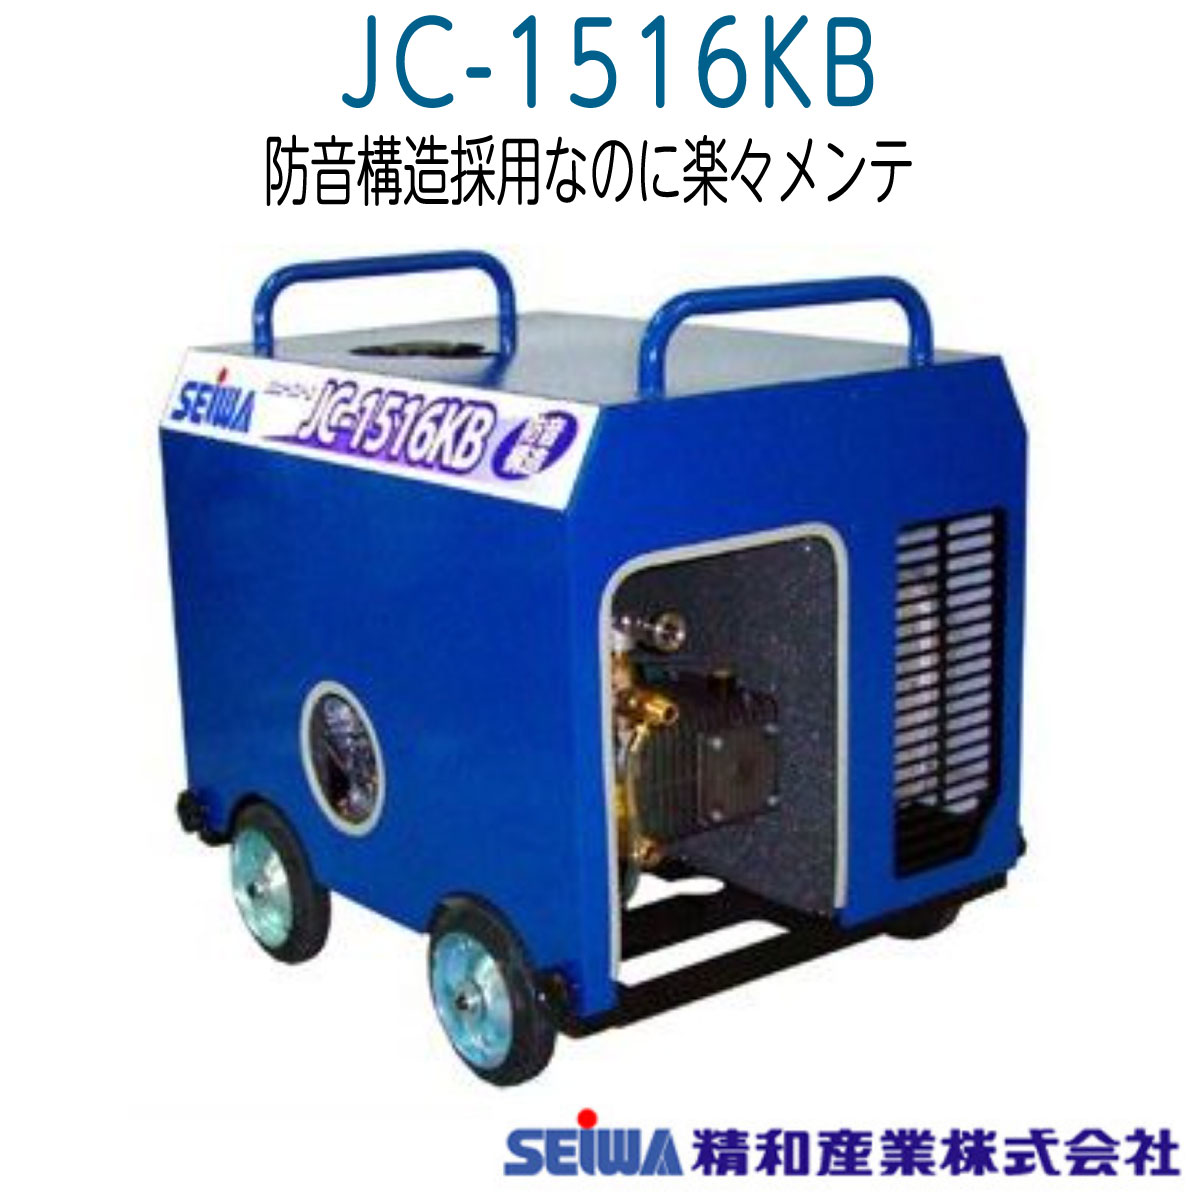 JC-1516KB 精和産業 防音構造型 《メーカー直送